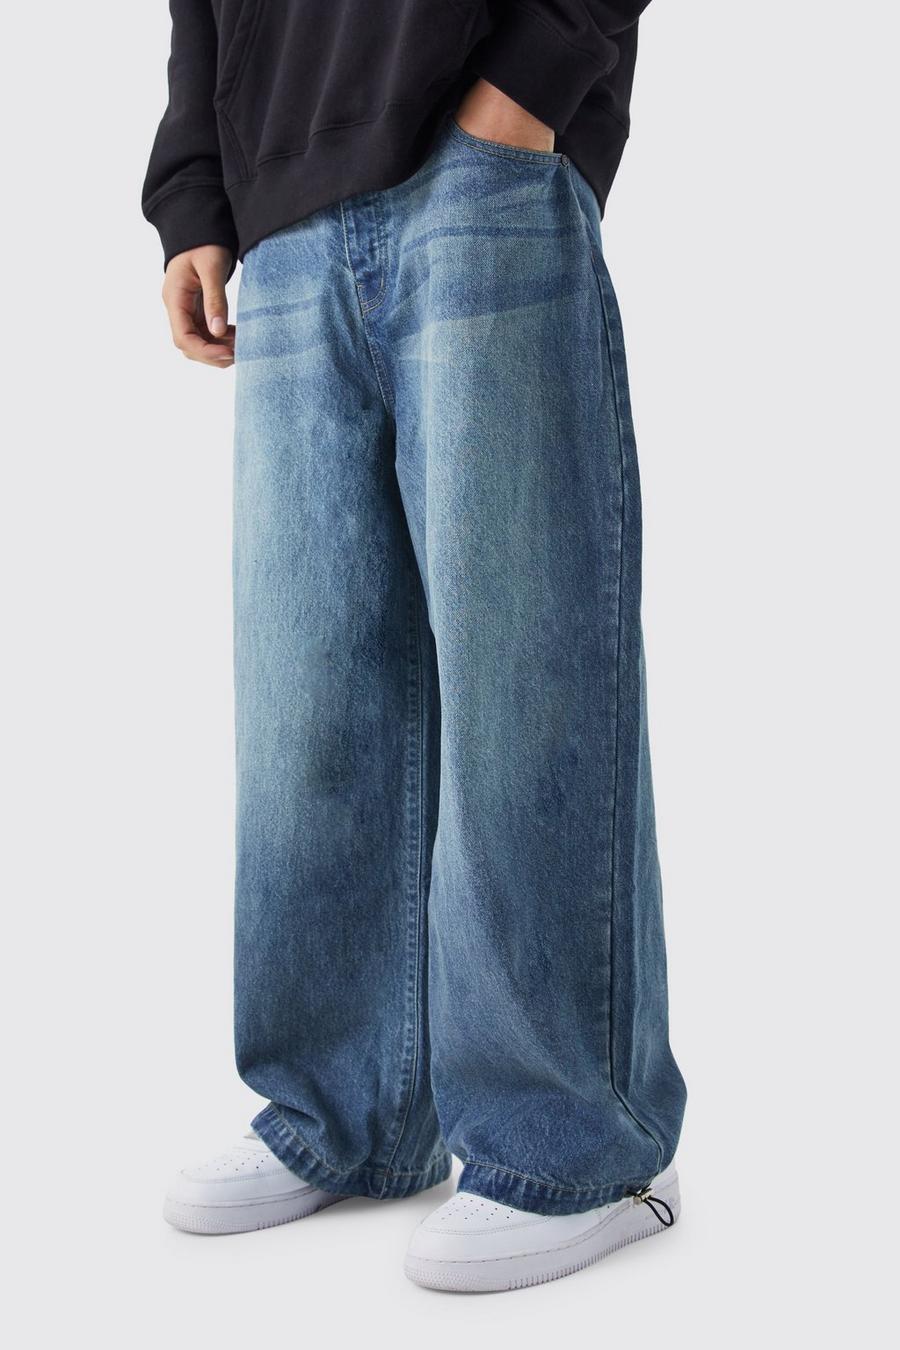 Jeans Parachute in denim, Vintage blue